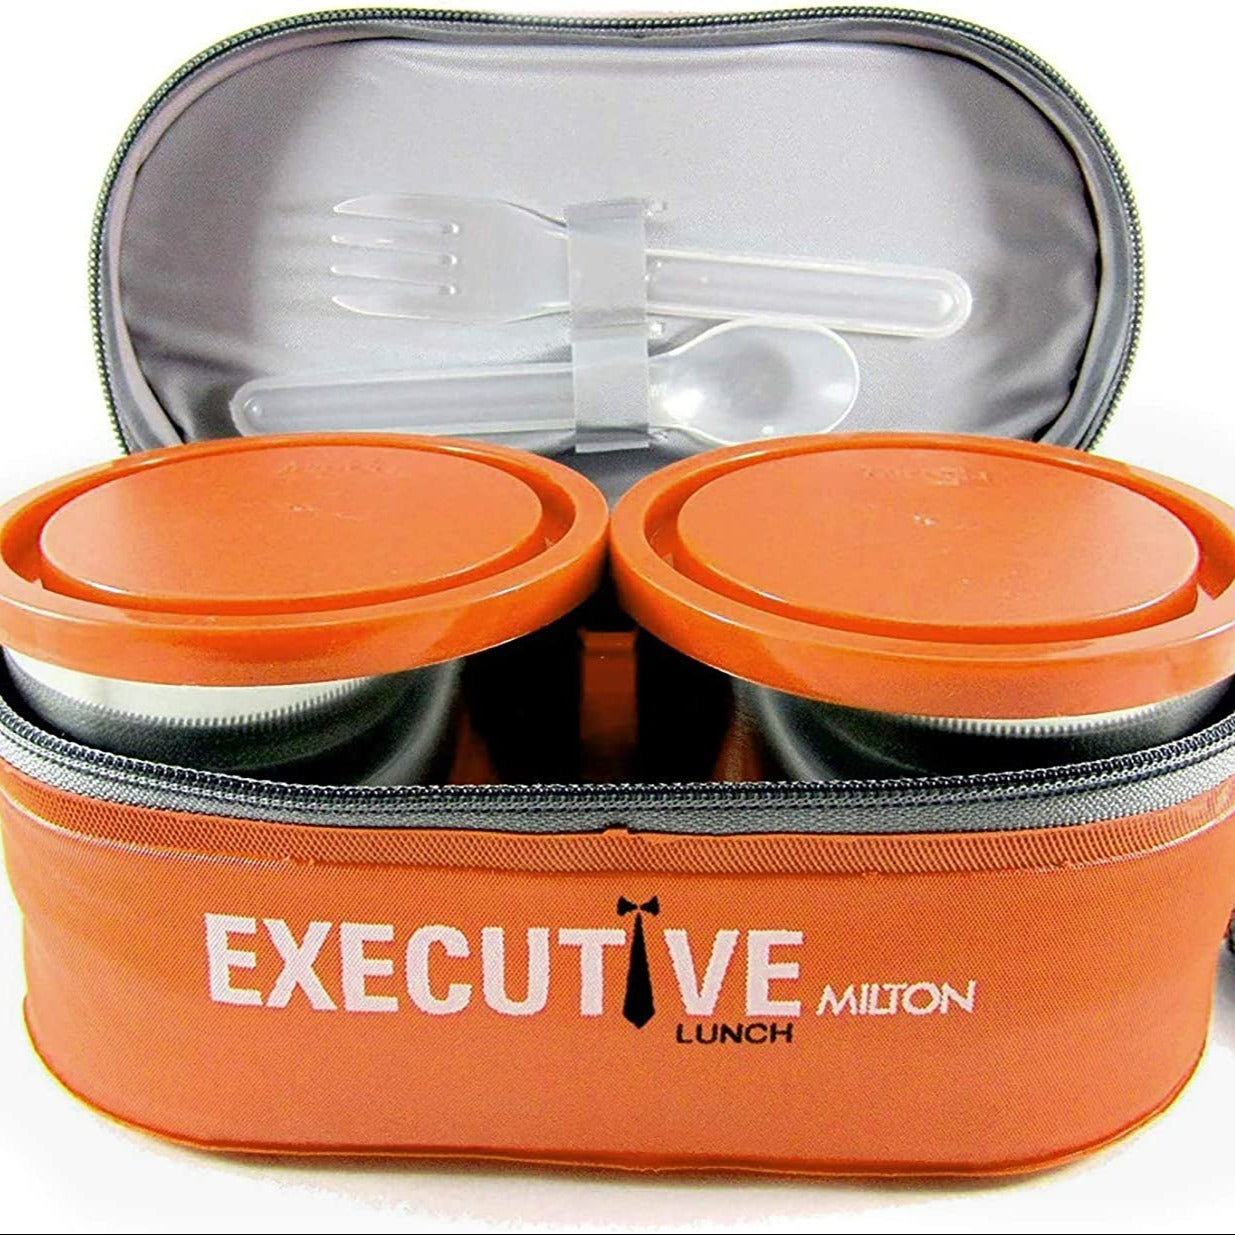 X10-Lunch Box Insulated - X10 Maroc - Livraison gratuite - Orange